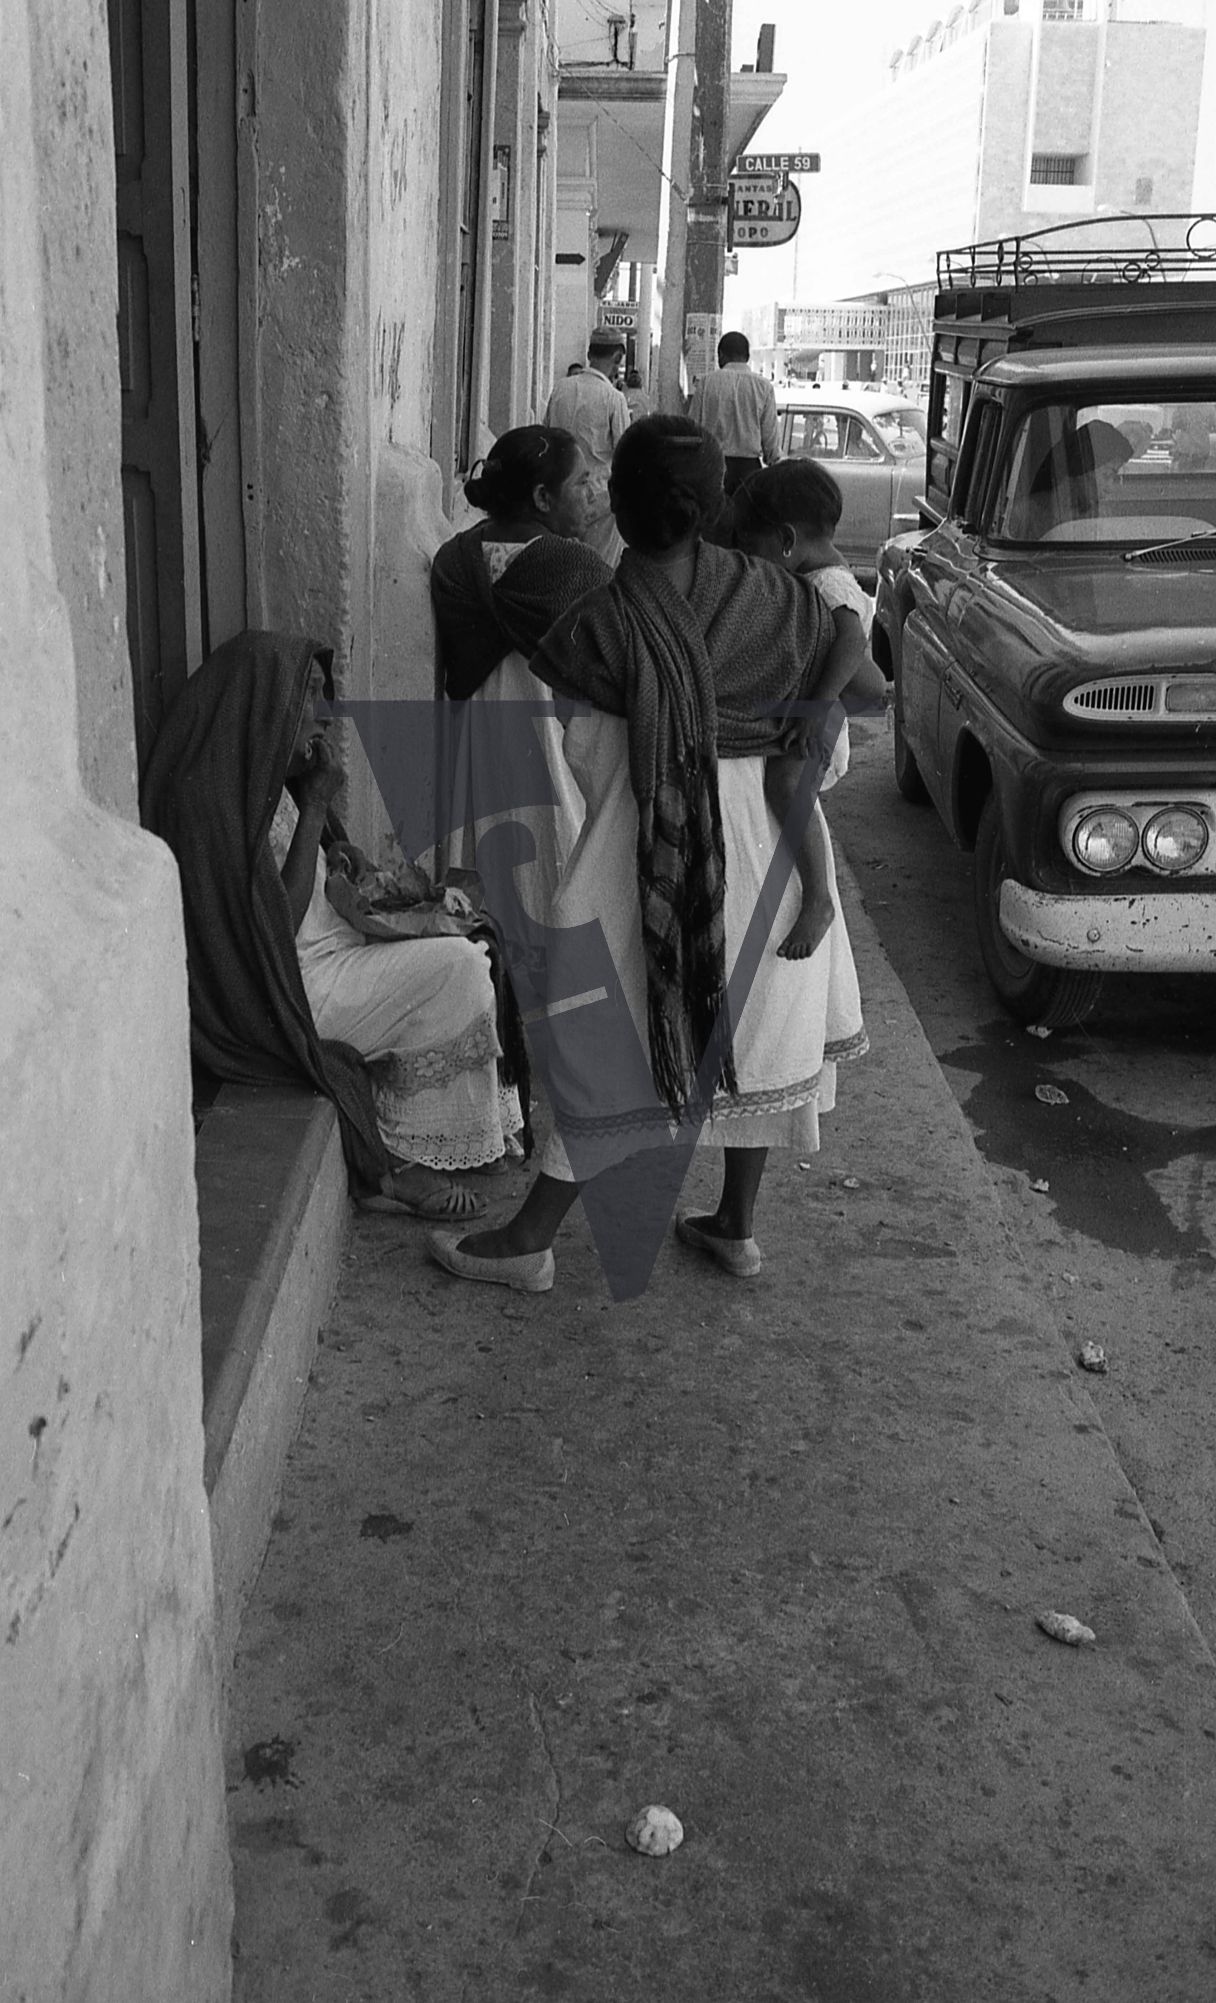 Mexico, Street scene, women talking.